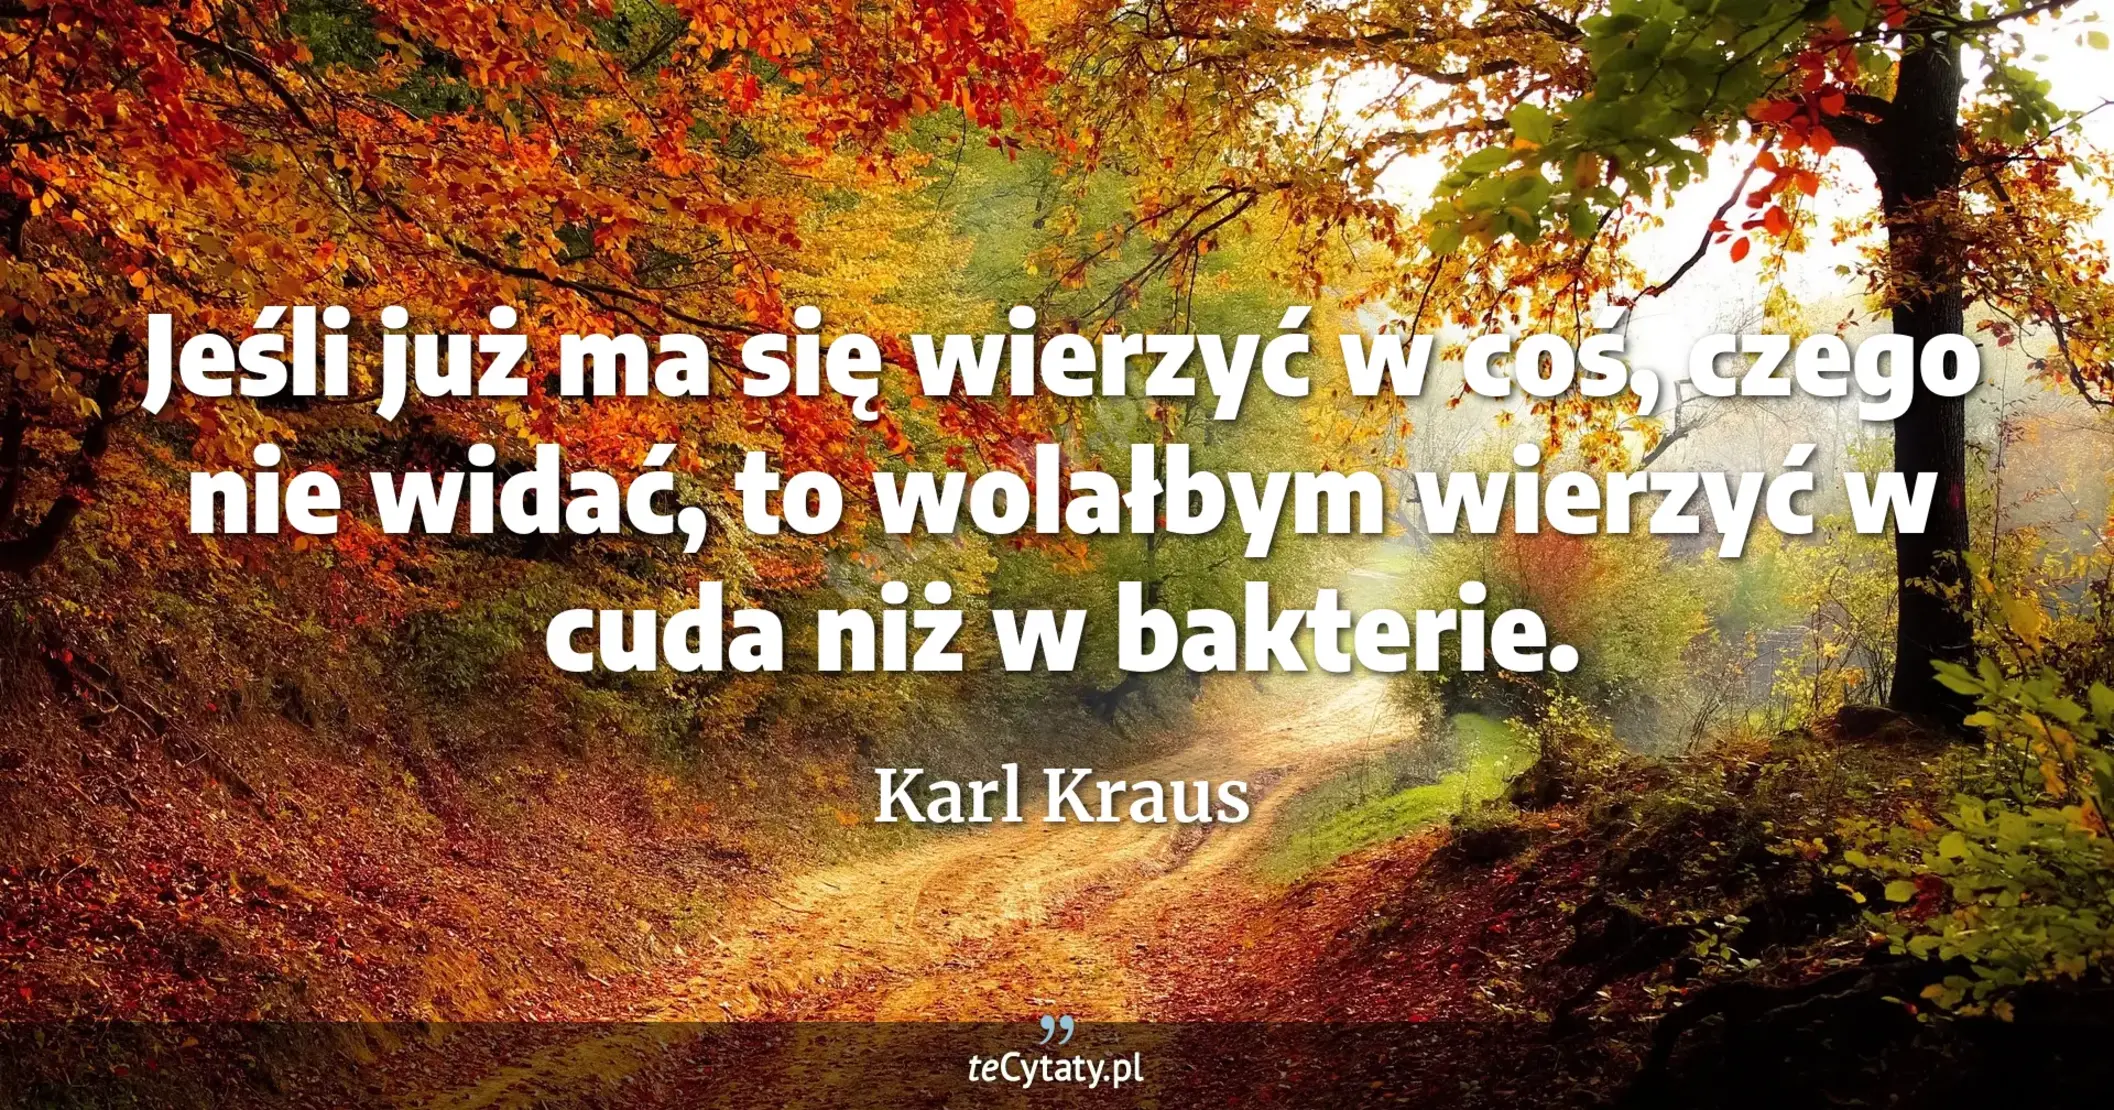 Jeśli już ma się wierzyć w coś, czego nie widać, to wolałbym wierzyć w cuda niż w bakterie. - Karl Kraus